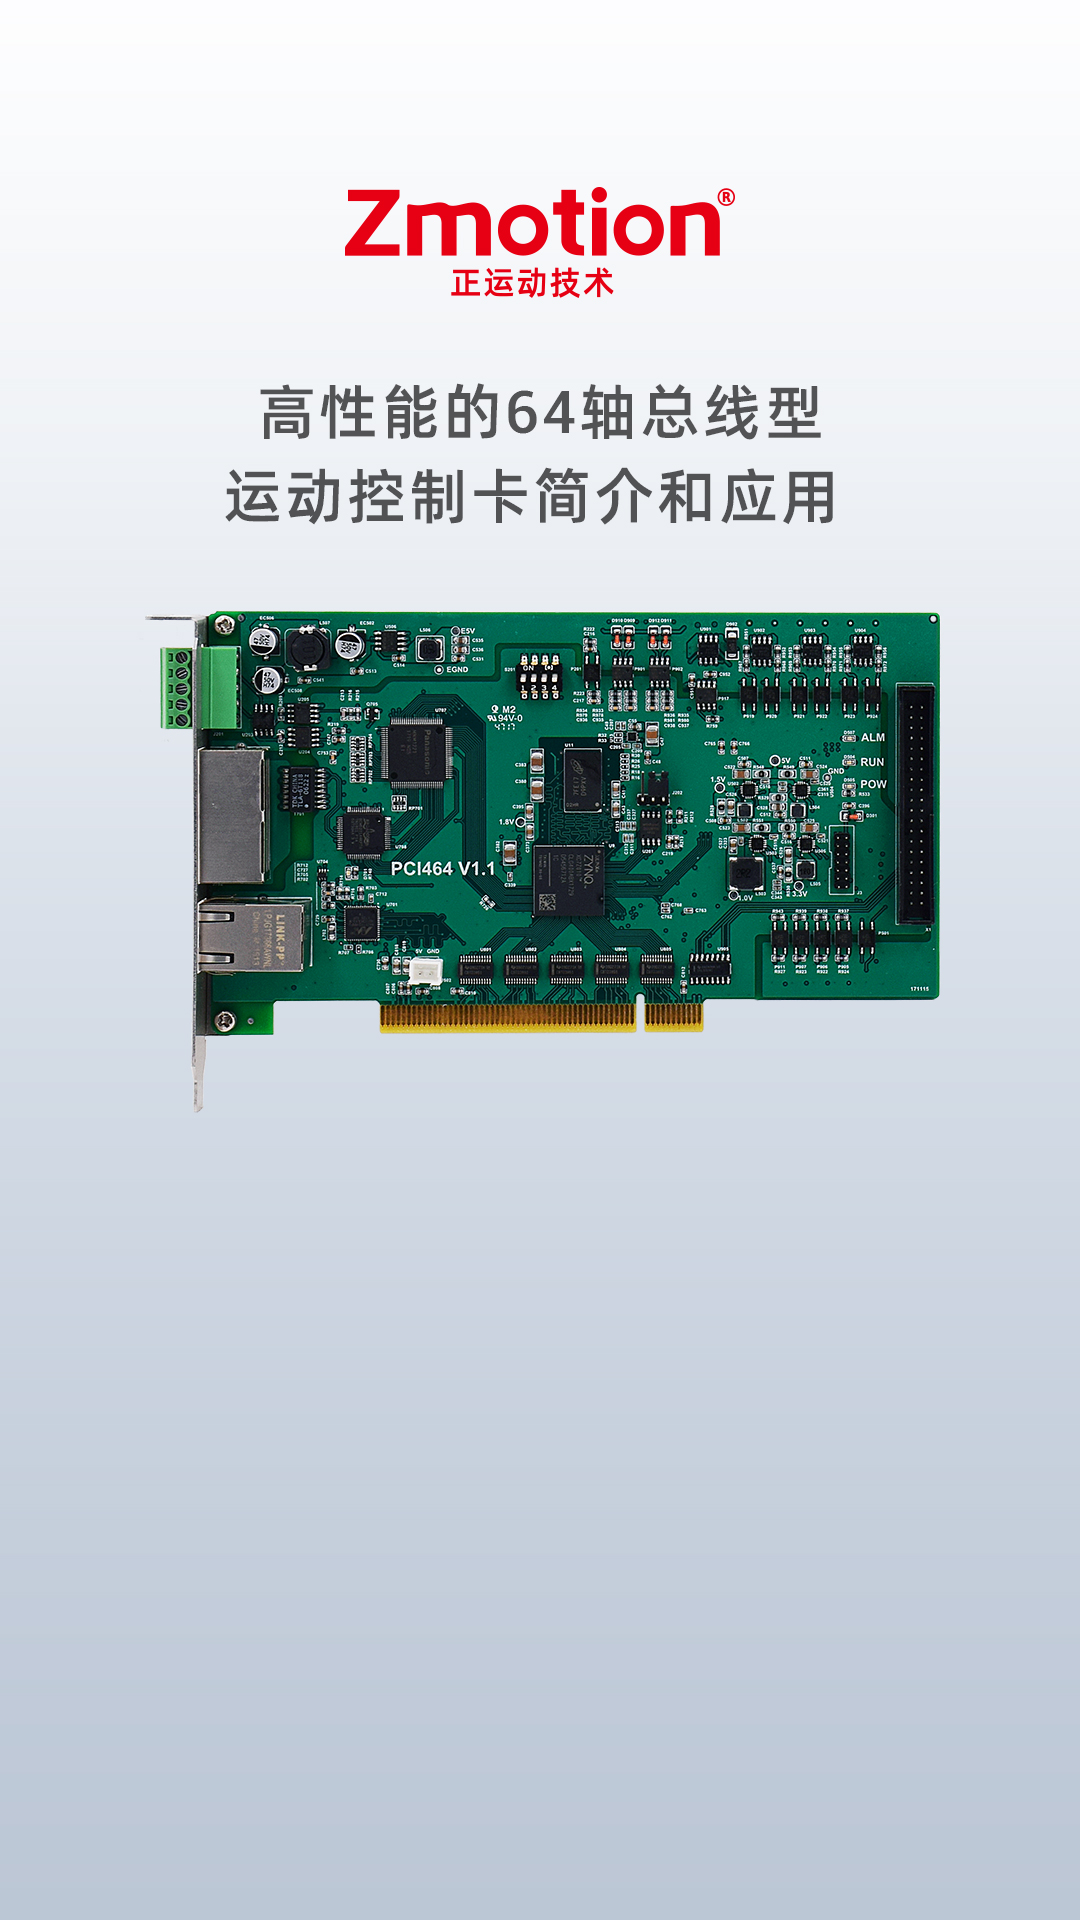 高性能的64轴总线型运动控制卡PCI464E# 工业自动化# 运动控制卡
